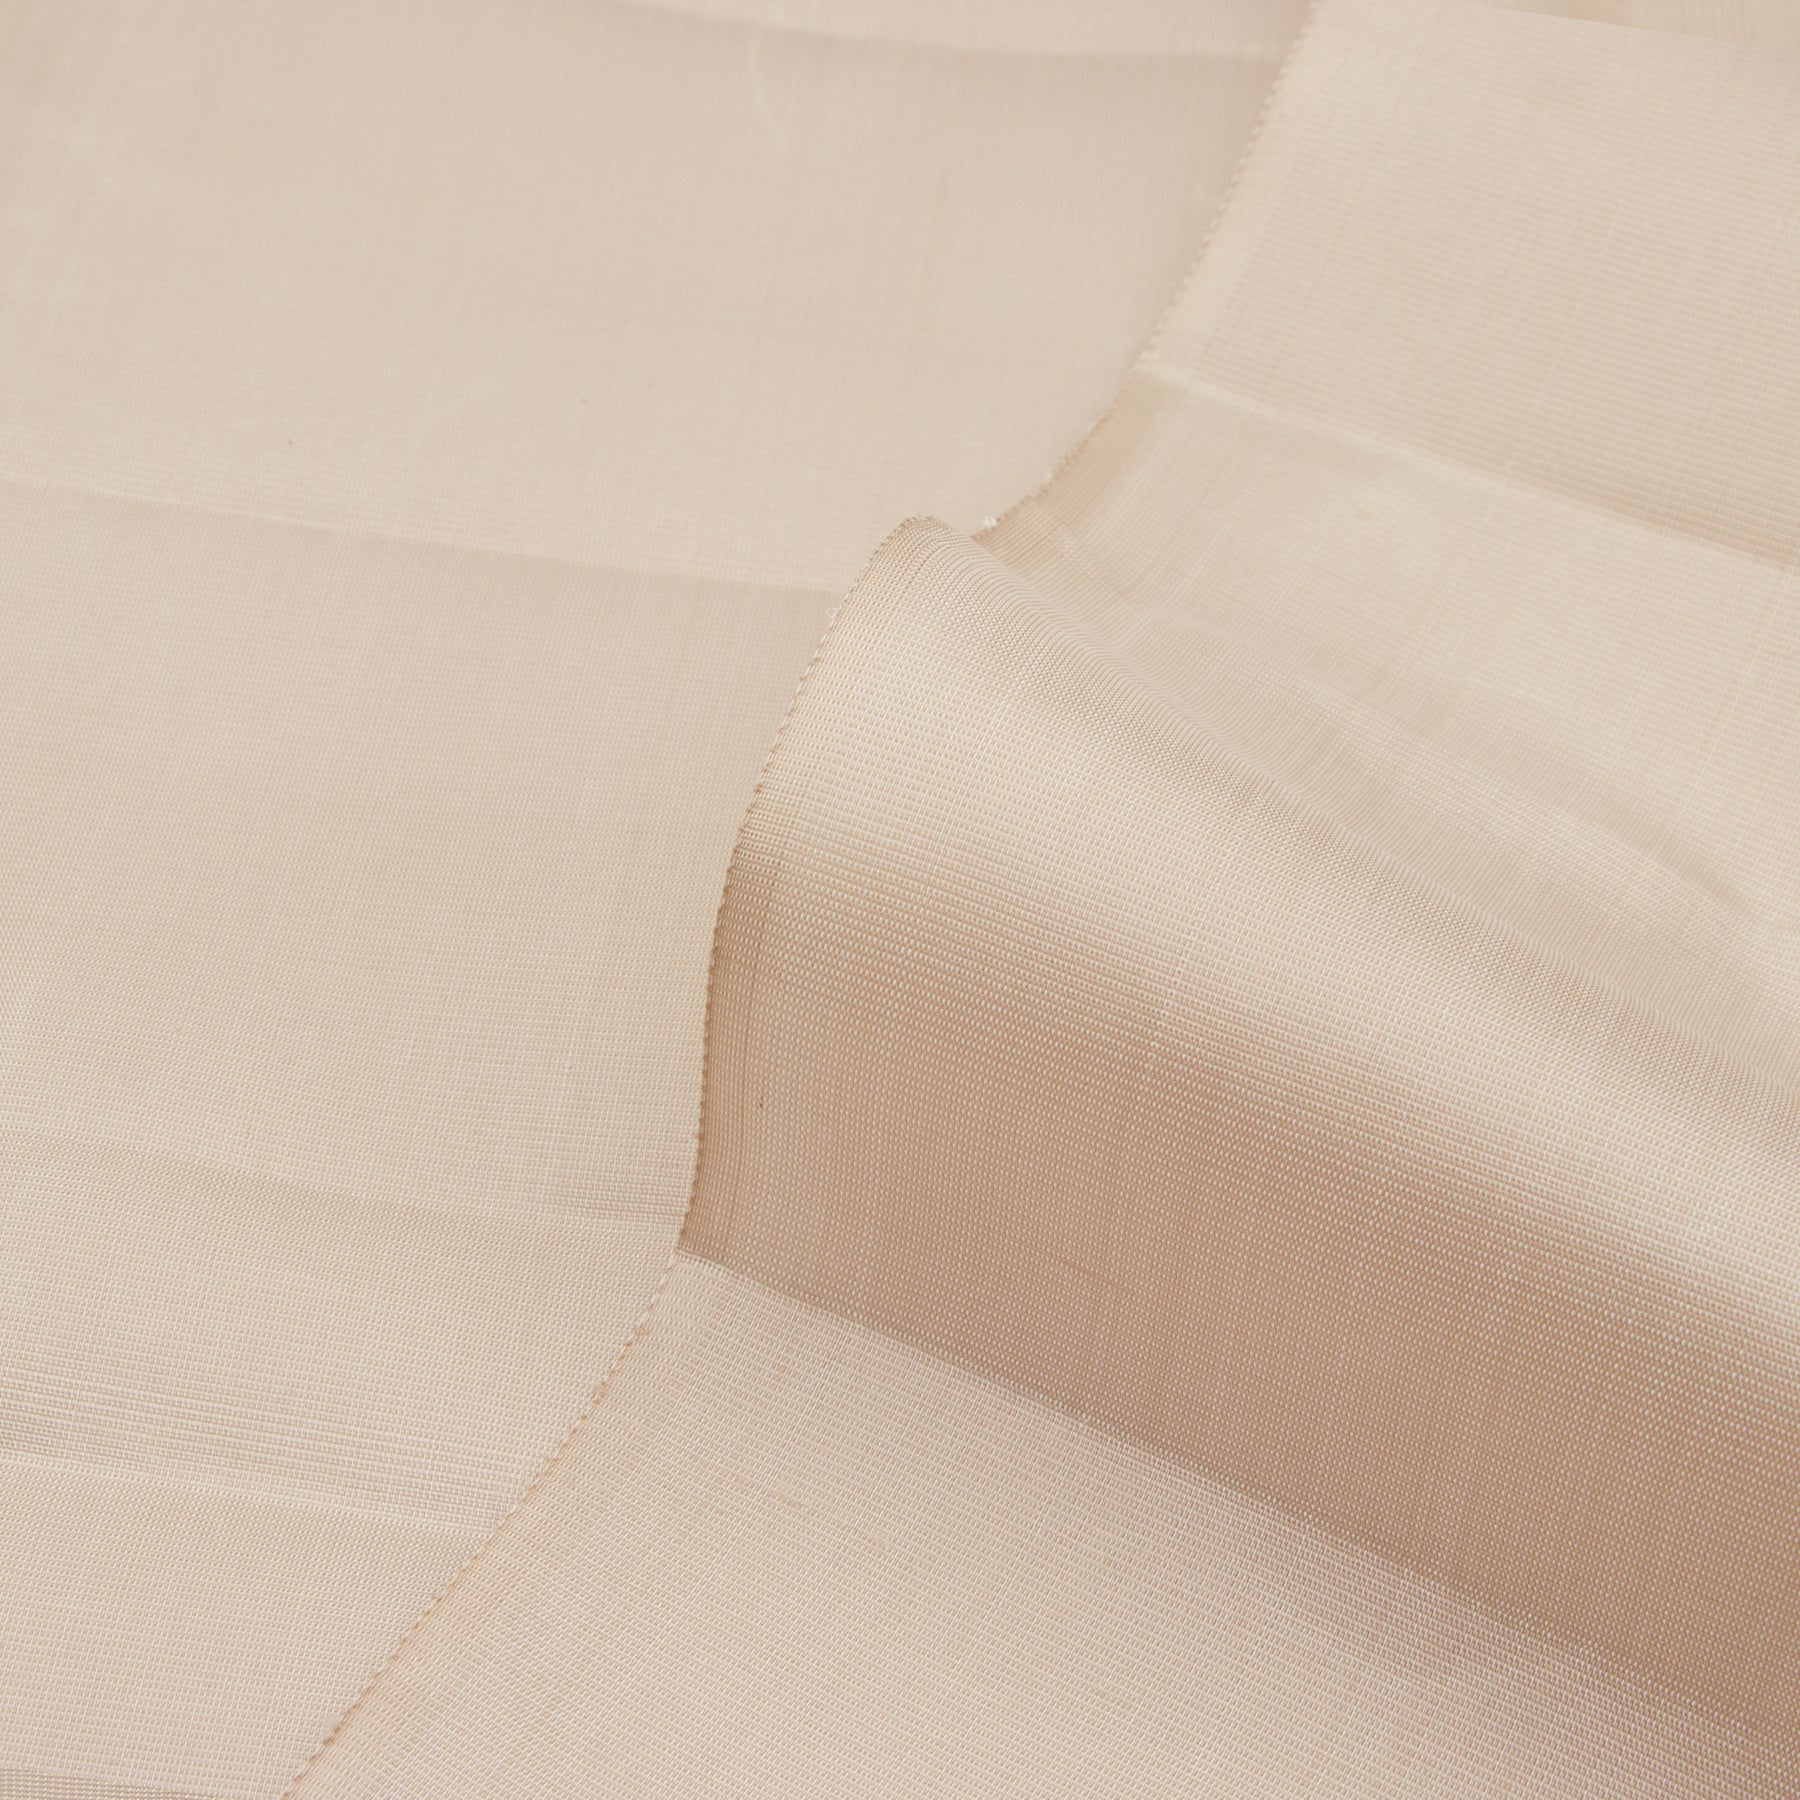 Kanakavalli Kanjivaram Silk Fabric Length 22-110-HF001-02987 - Profile View